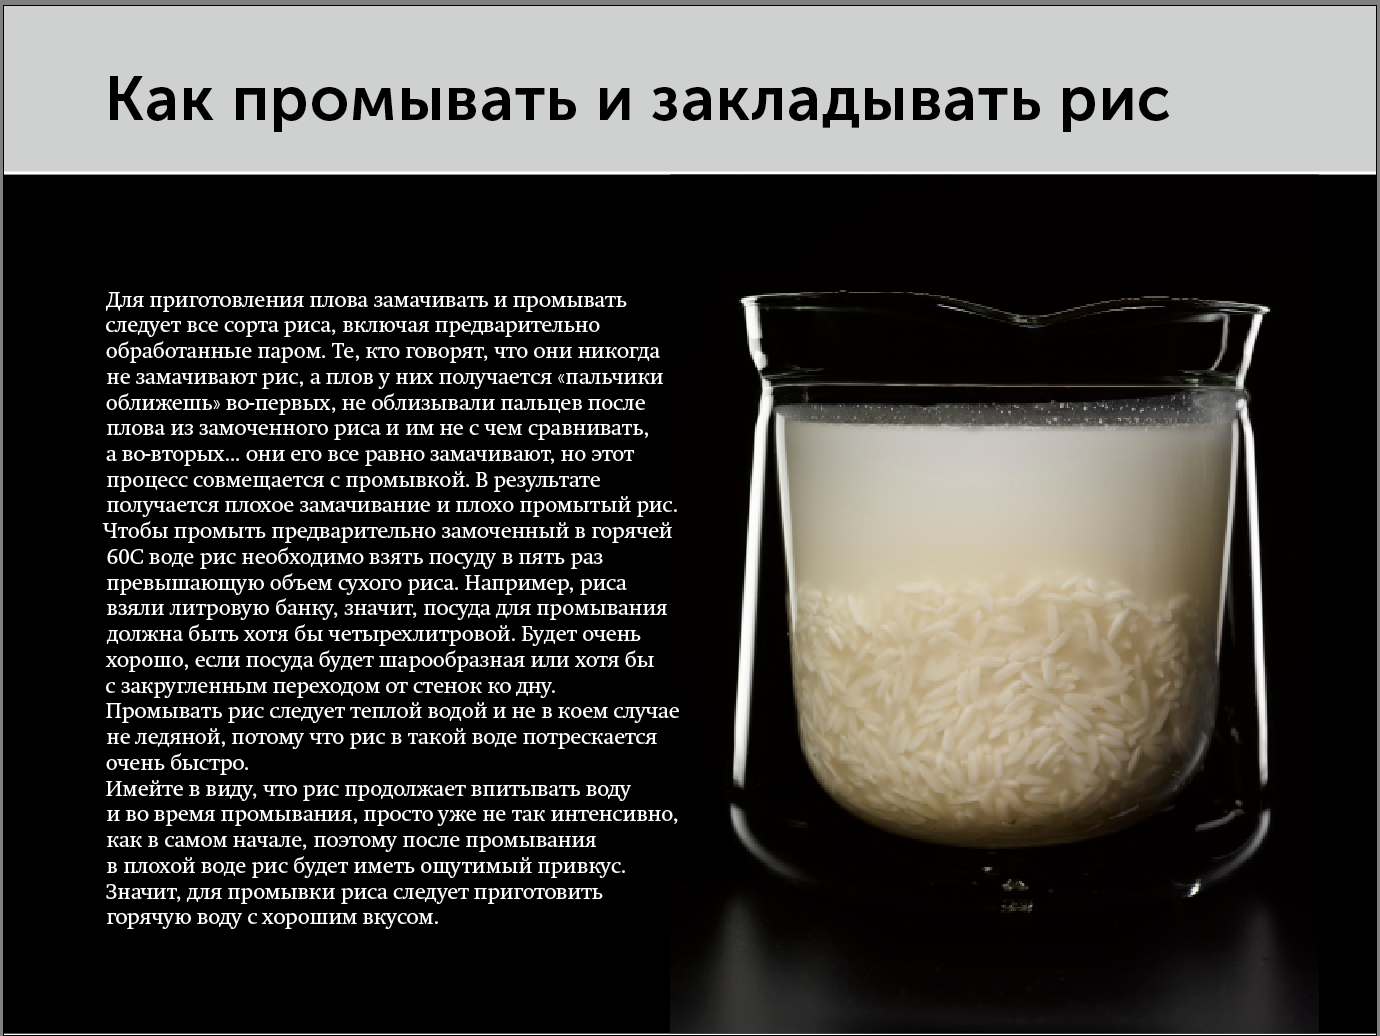 Рис 2 стакана сколько воды нужно. Соотношение риса и воды для плова. Порции риса и воды для плова. Соотношение воды и риса в плове в стаканах. Рис пропорции воды и риса для плова.